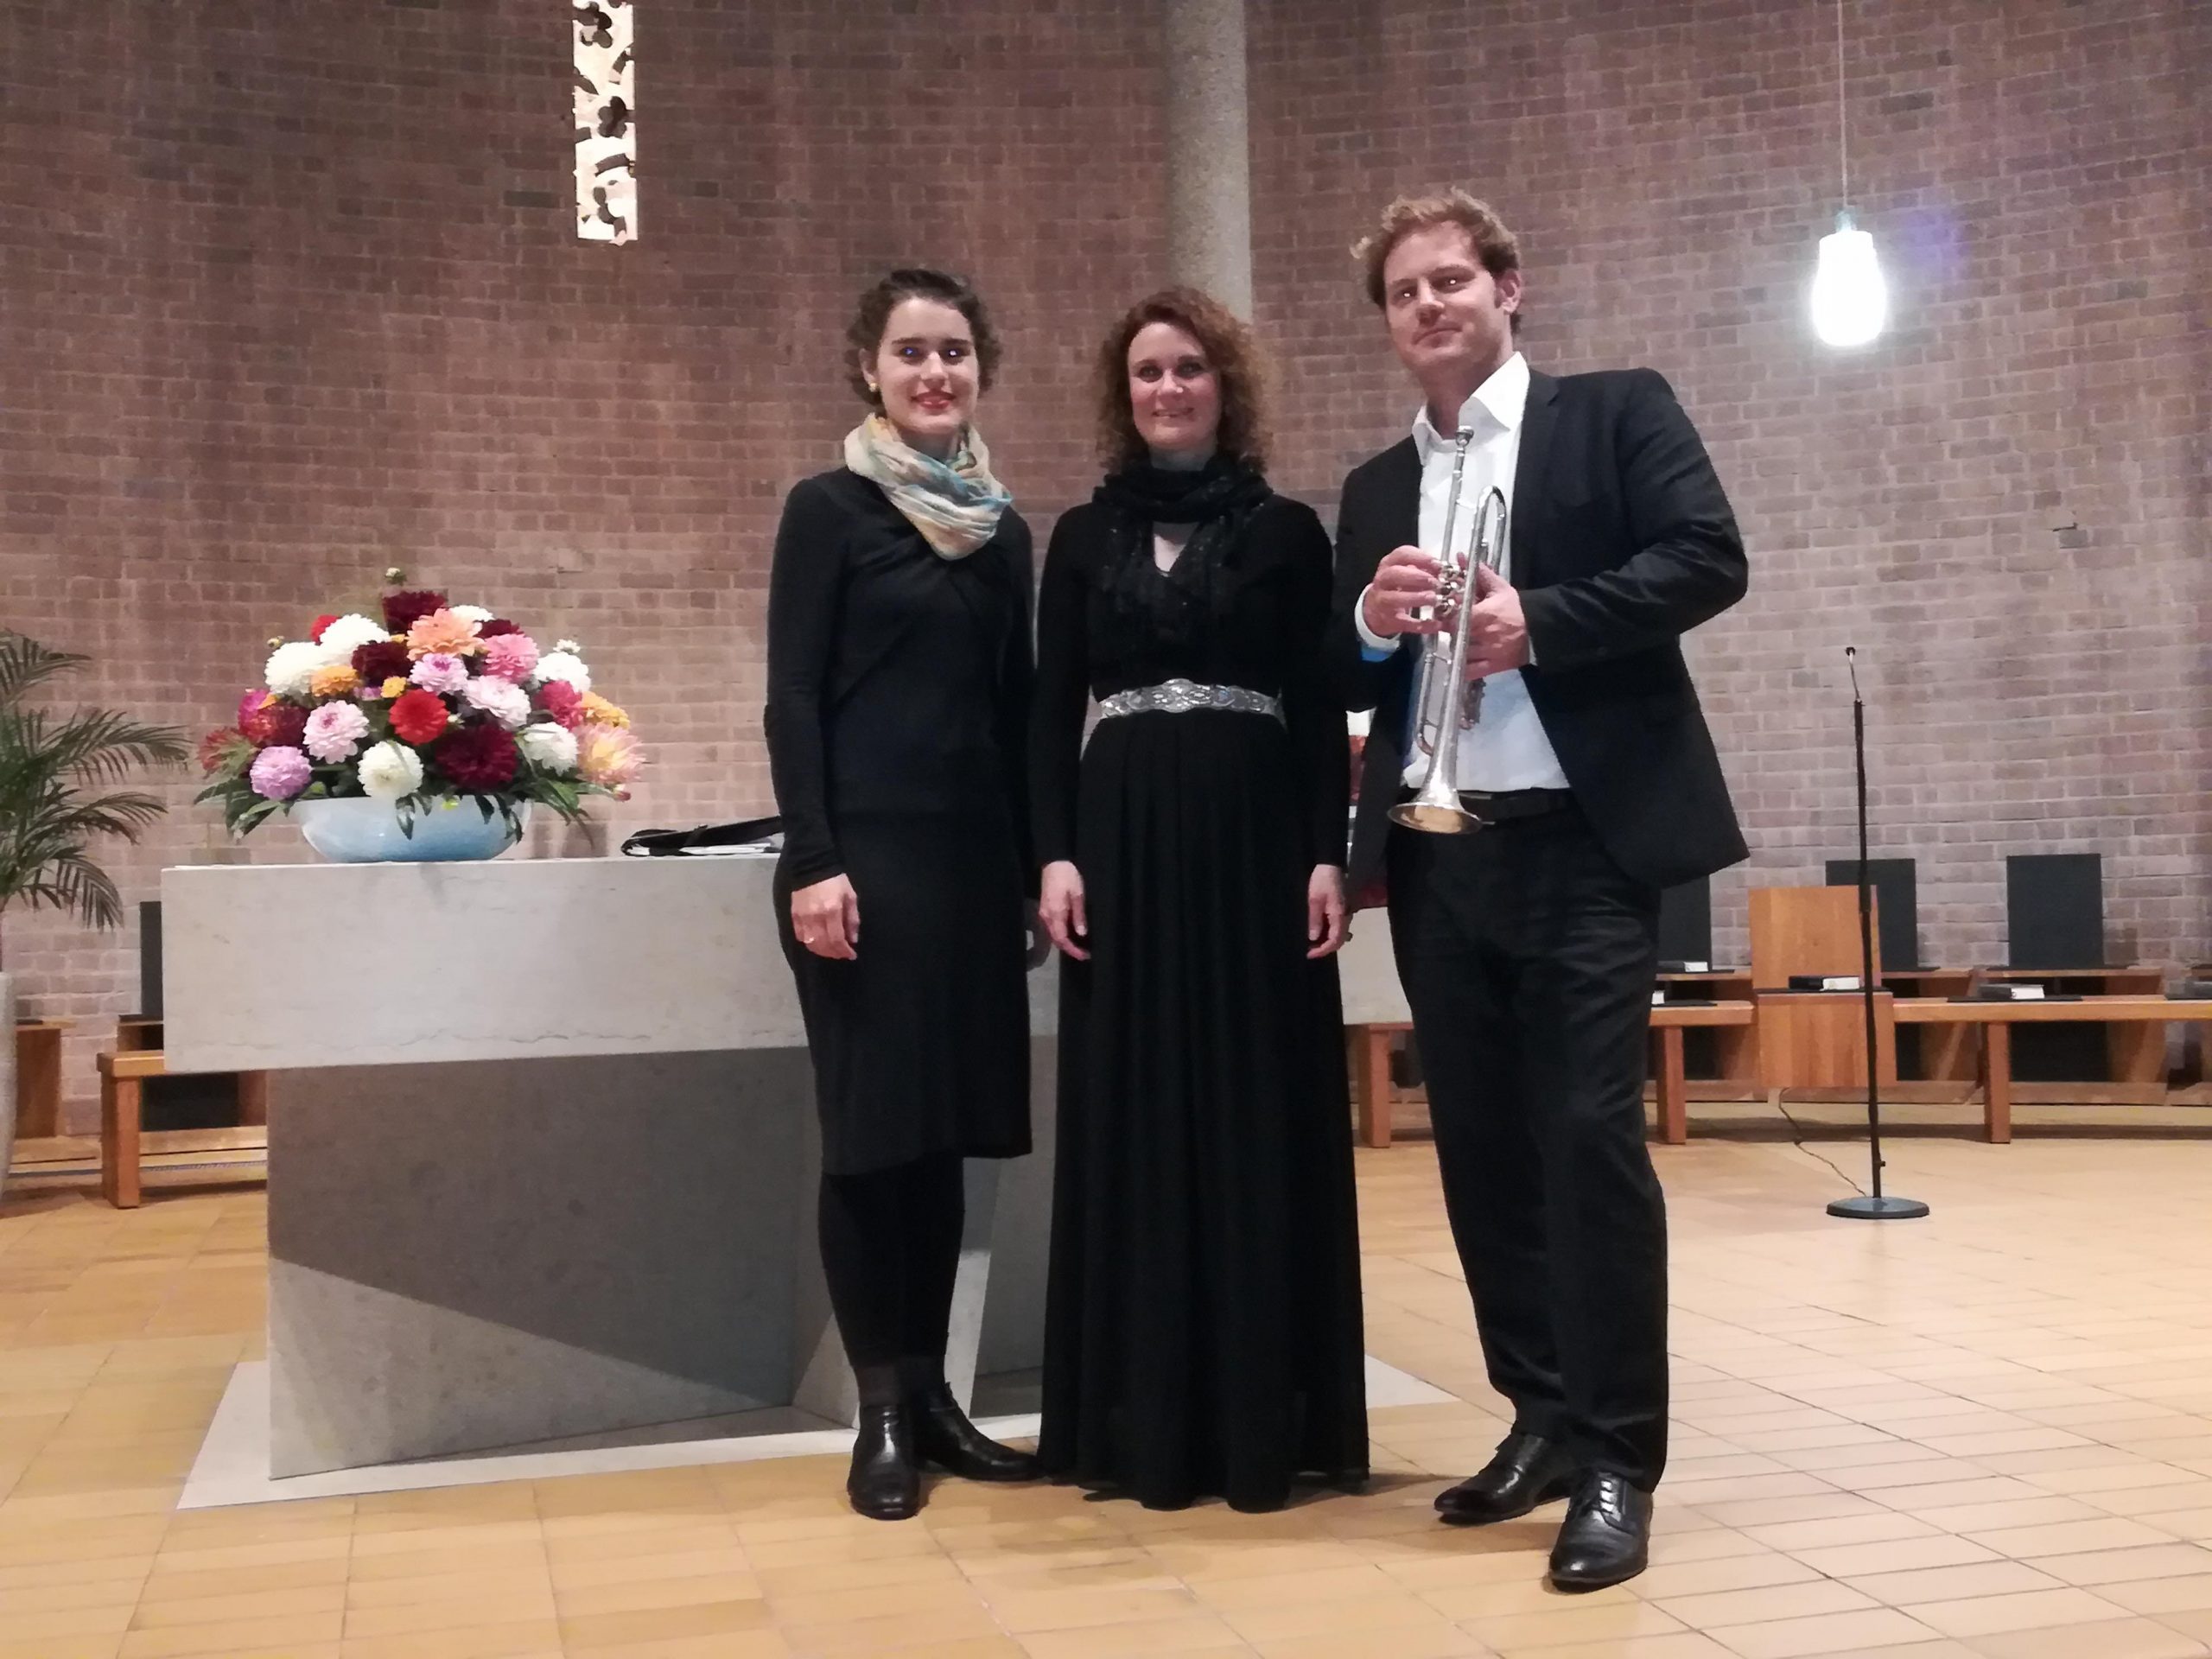 Anabelle Hund, Rüdiger Kurz und Christine Rahn beim Konzert der IGP e.V. im Rahmen der Französischen Woche in Heidelberg.